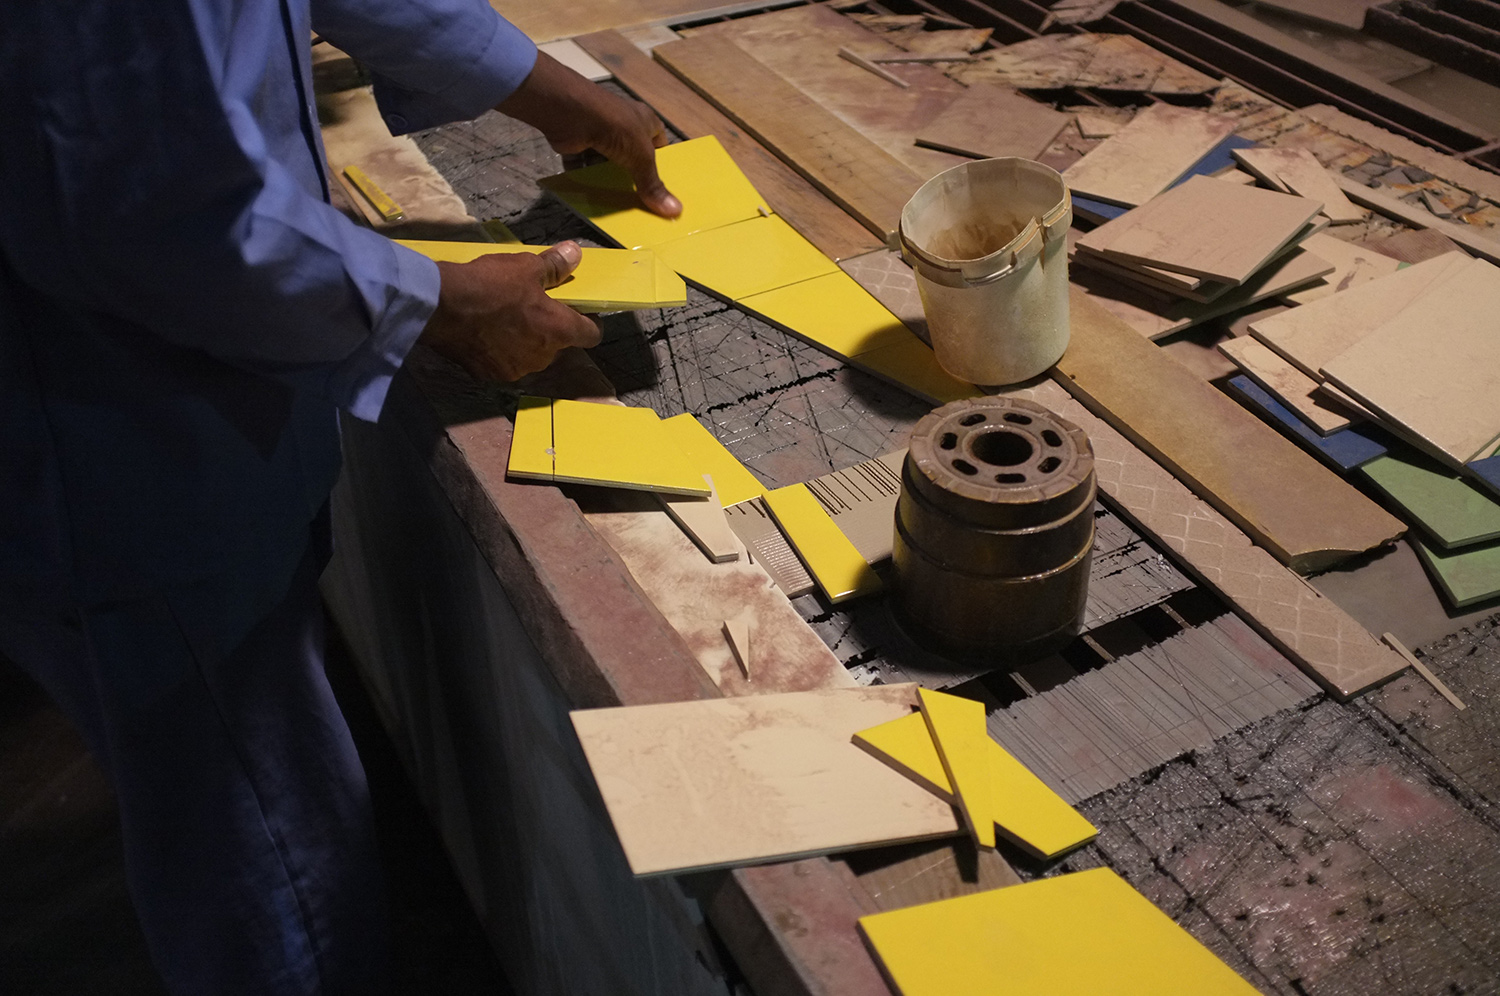  Tile cutting process      Lever L.L.C factory  Dubai, UAE   Research image 